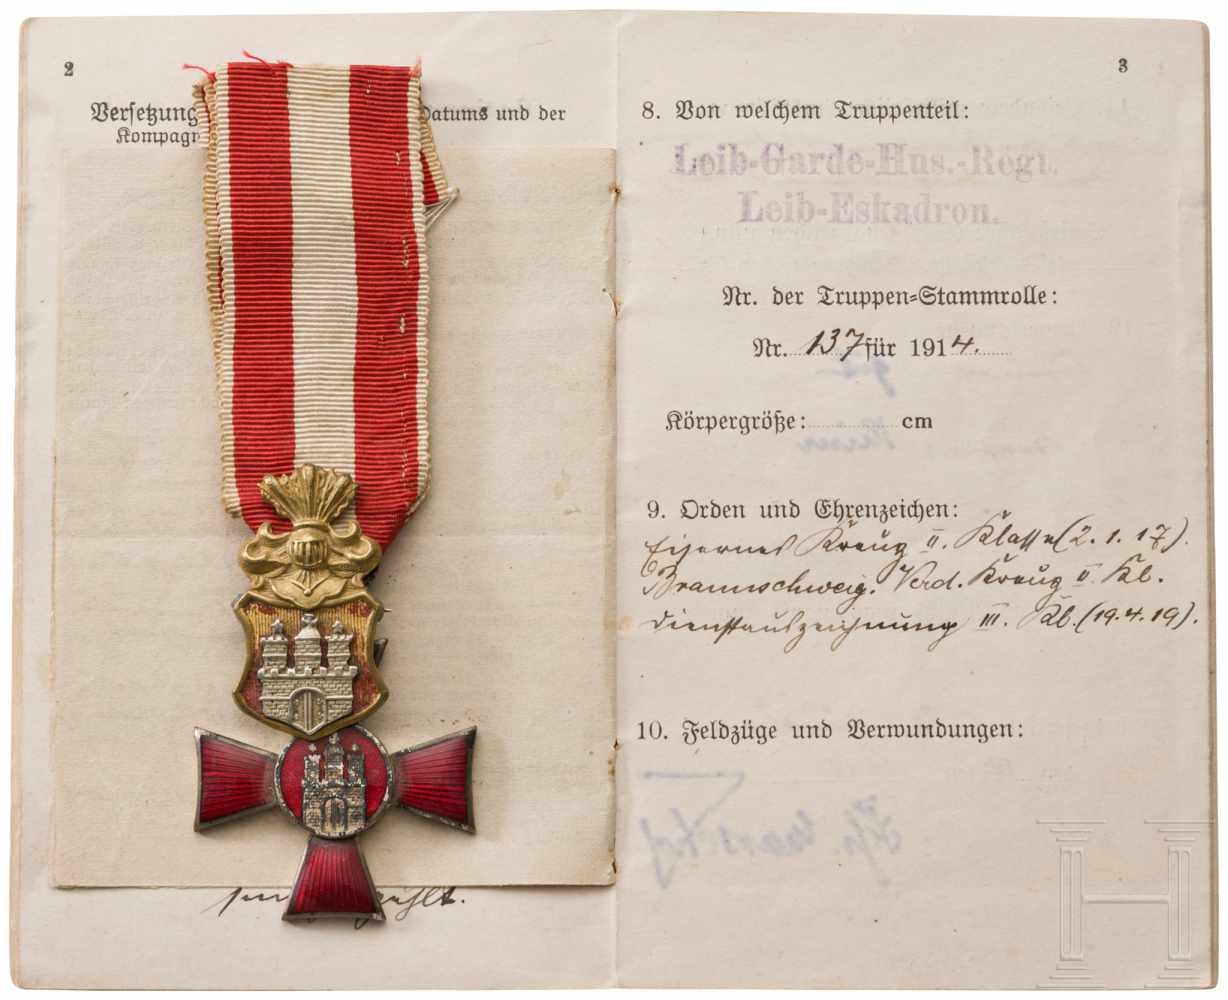 Auszeichnungen und UrkundenMVK 2. Klasse 1914, mit Bandabschnitt und Urkunde, ausgestellt am 1.11. - Image 5 of 6